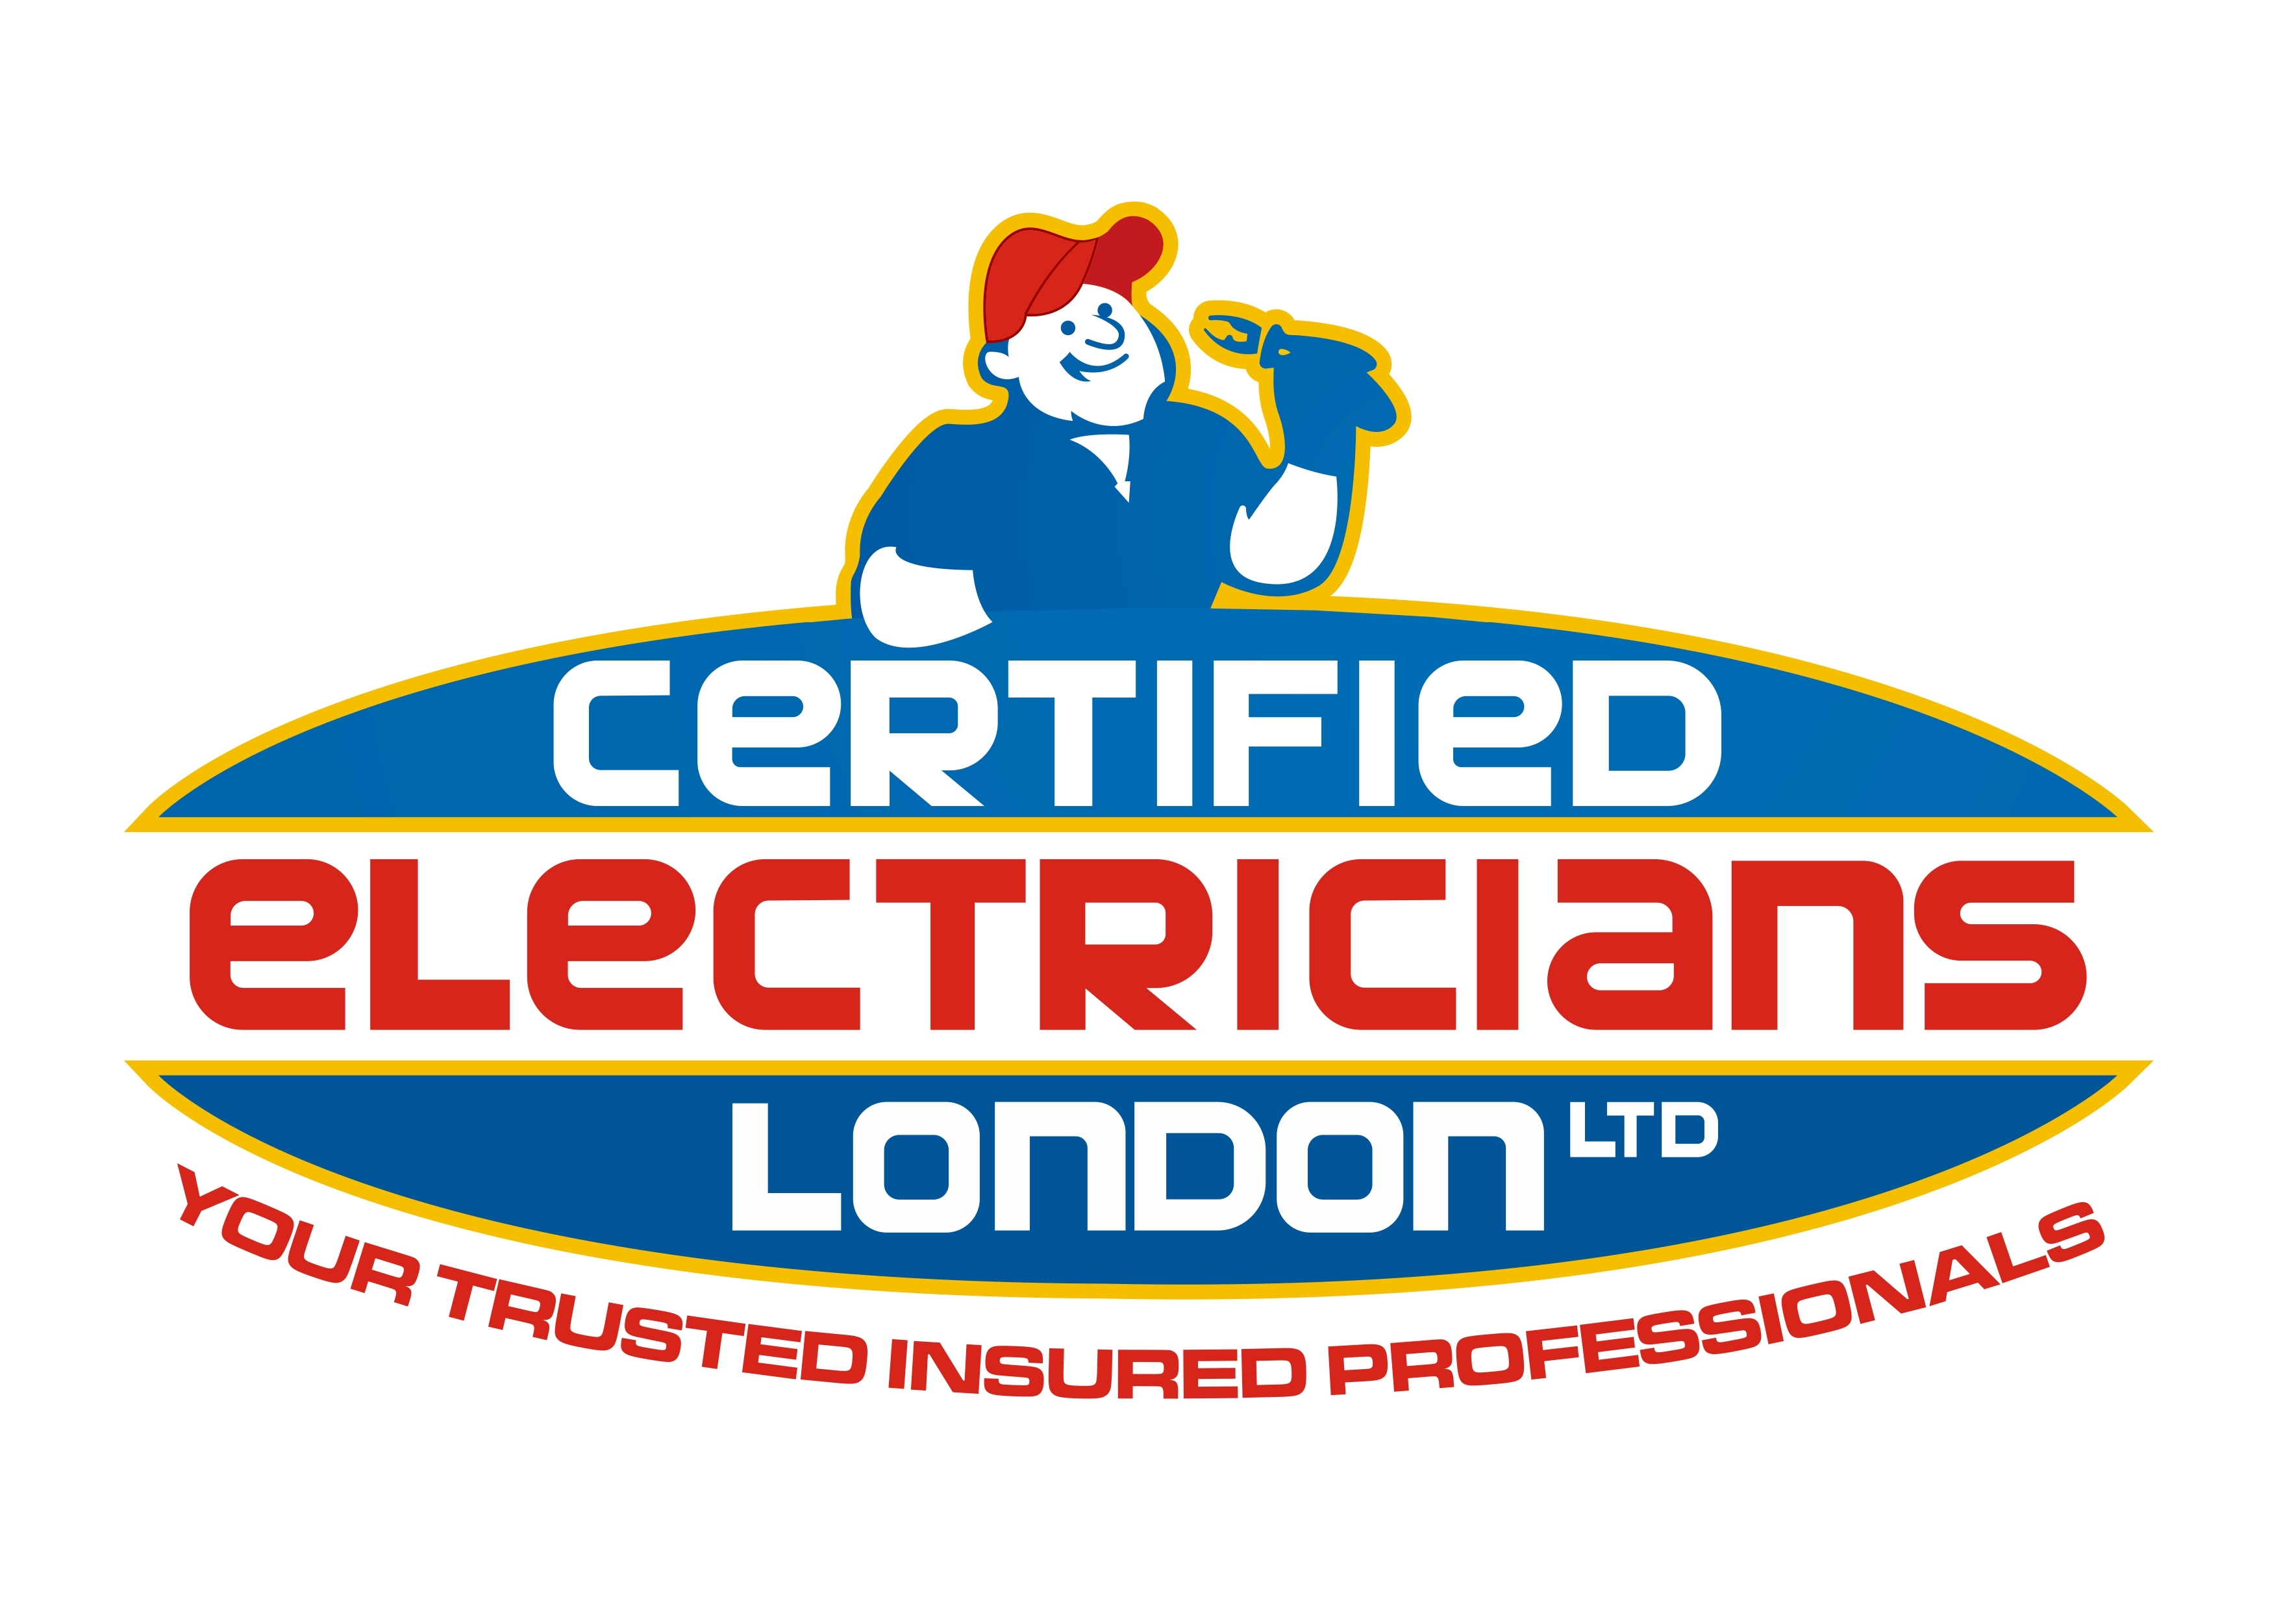 Certified Electricians London Ltd